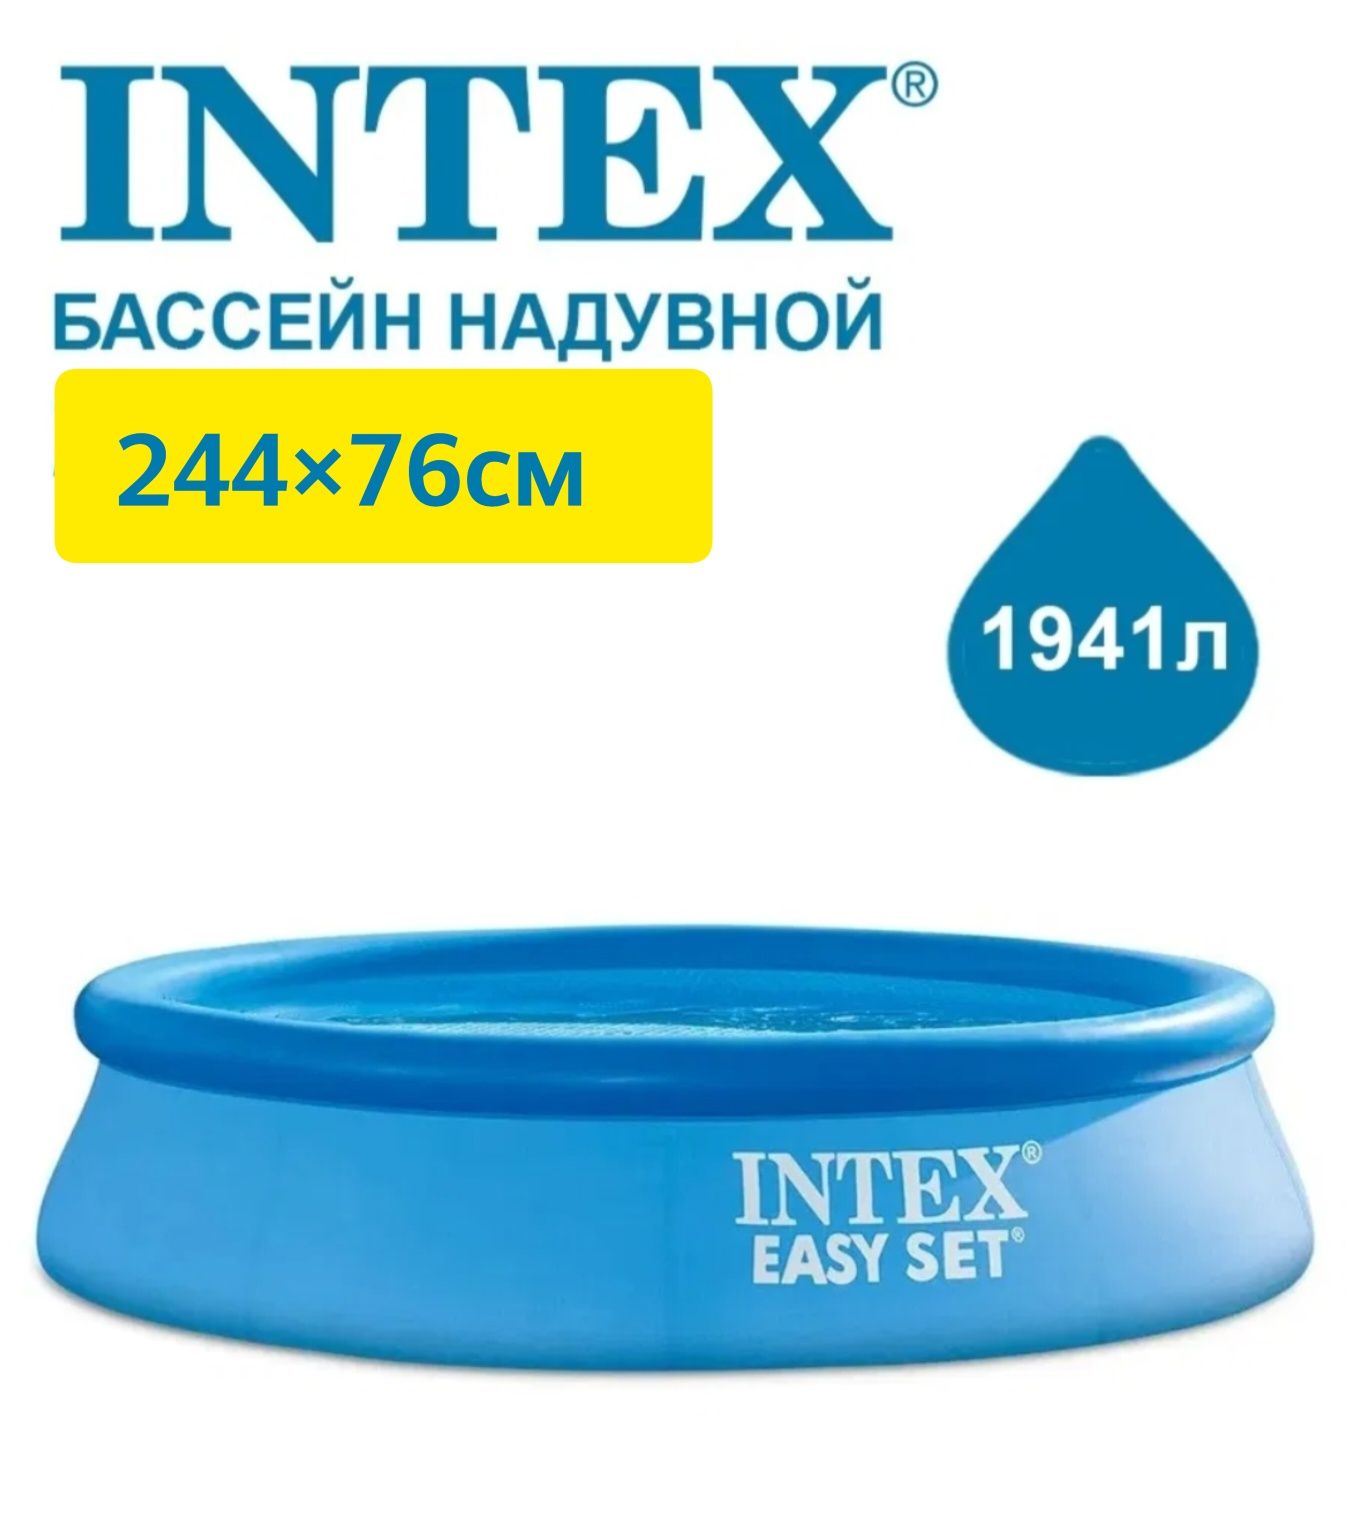 Бассейн надувной INTEX